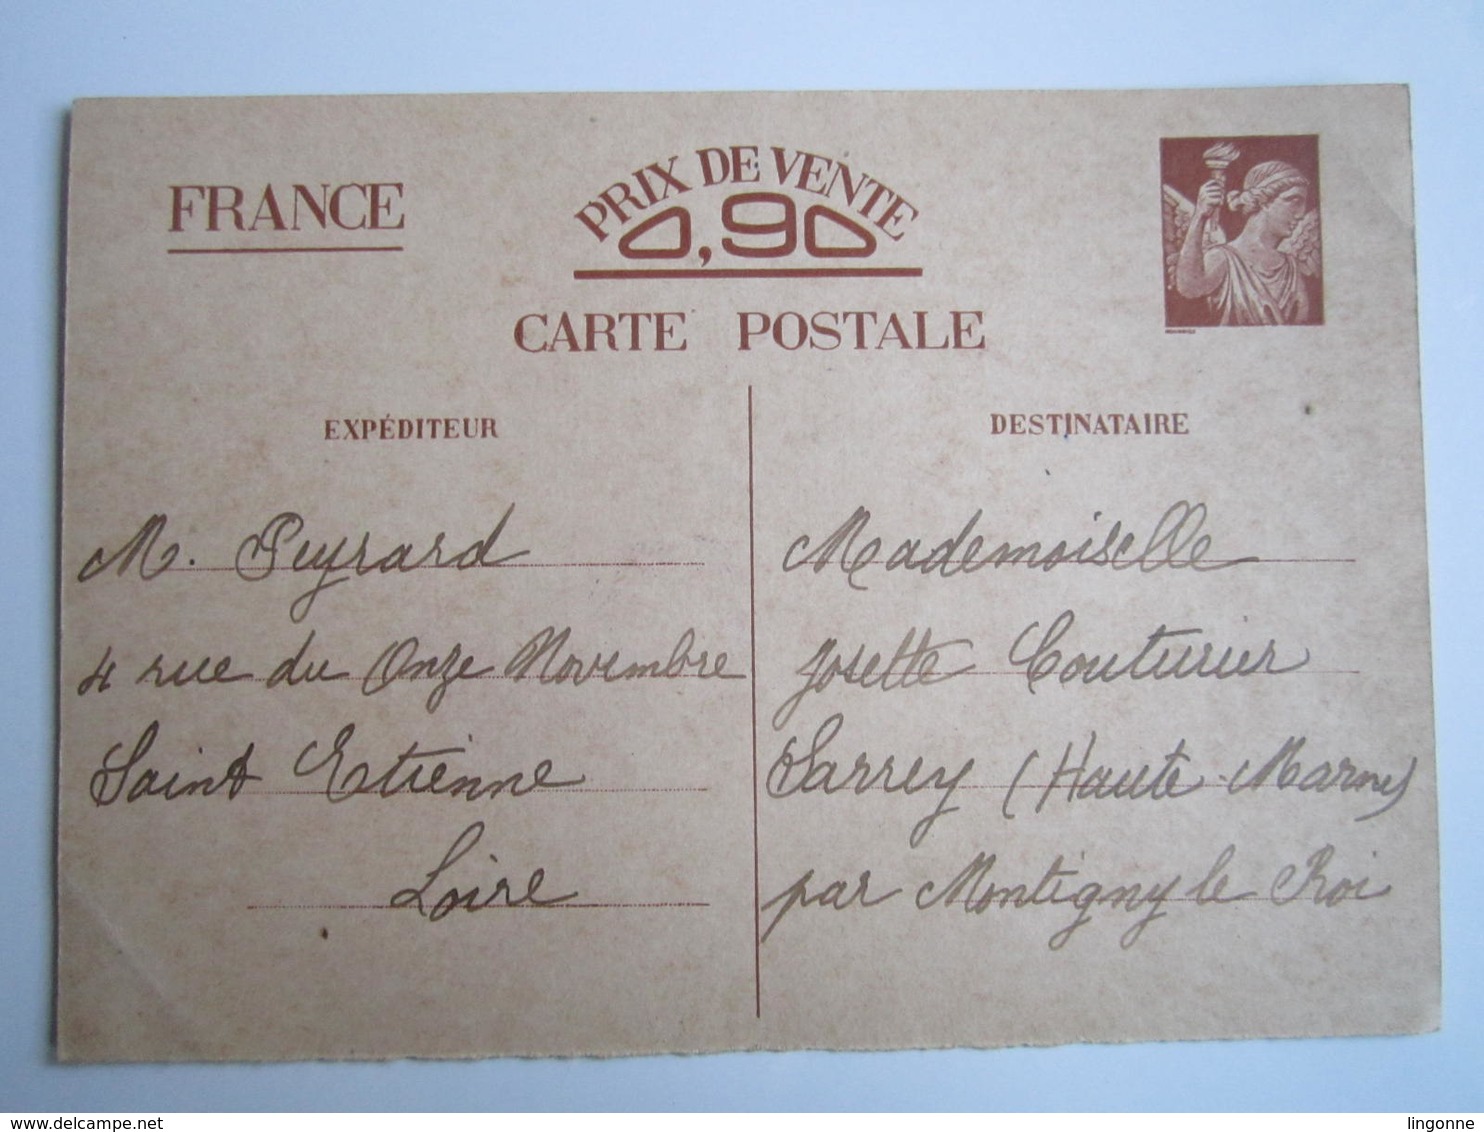 LOT de 9 Cartes postales Entier Postal Iris 90 ct 1940-41 SARREY BILLOM SAINT ETIENNE COUTURIER Oblitération Voir Photos